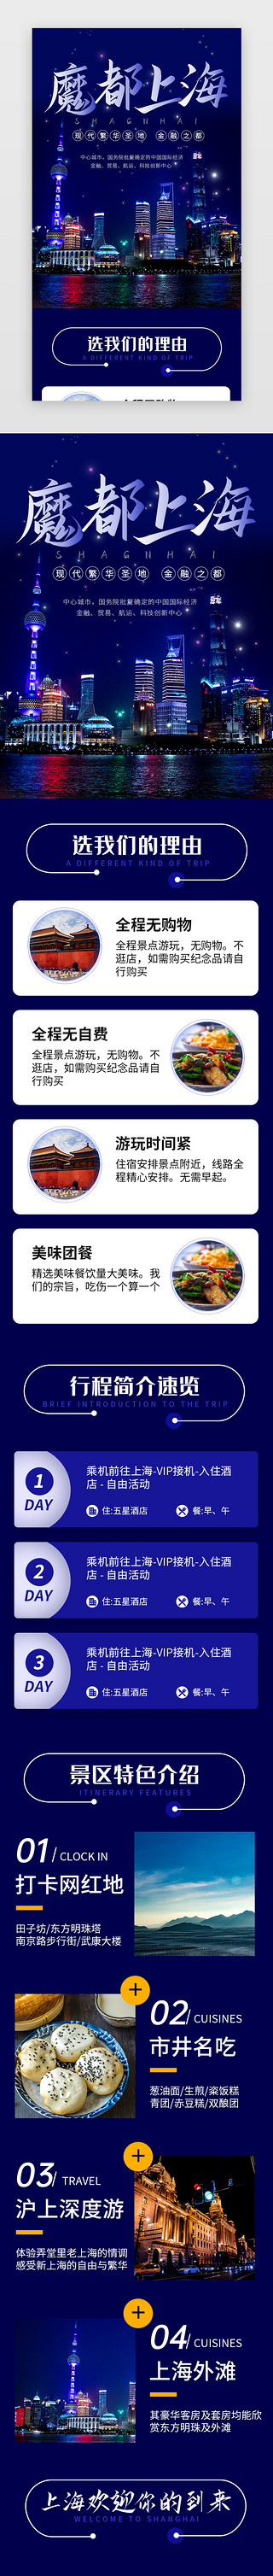 上海电影节UI设计素材_蓝色魔都上海旅行景点介绍H5长图海报